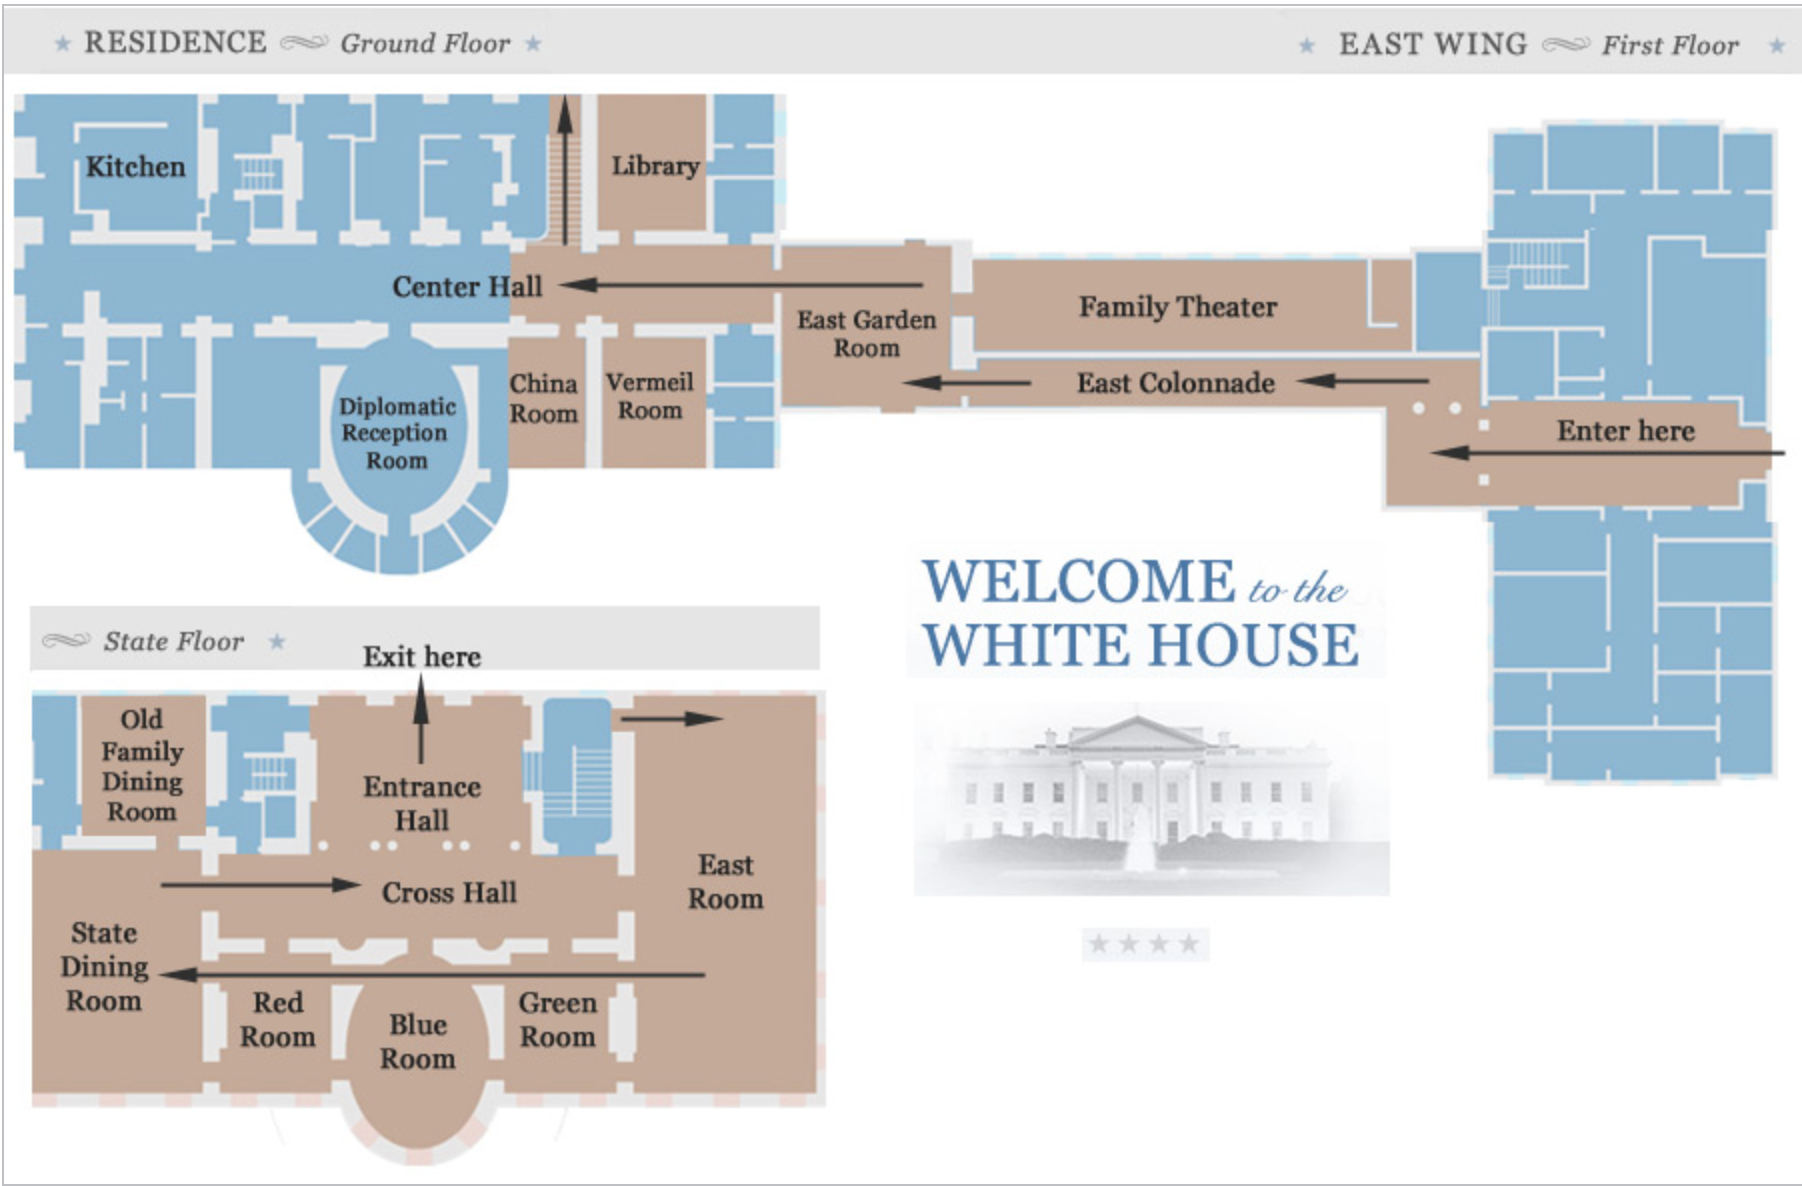 tour the white house